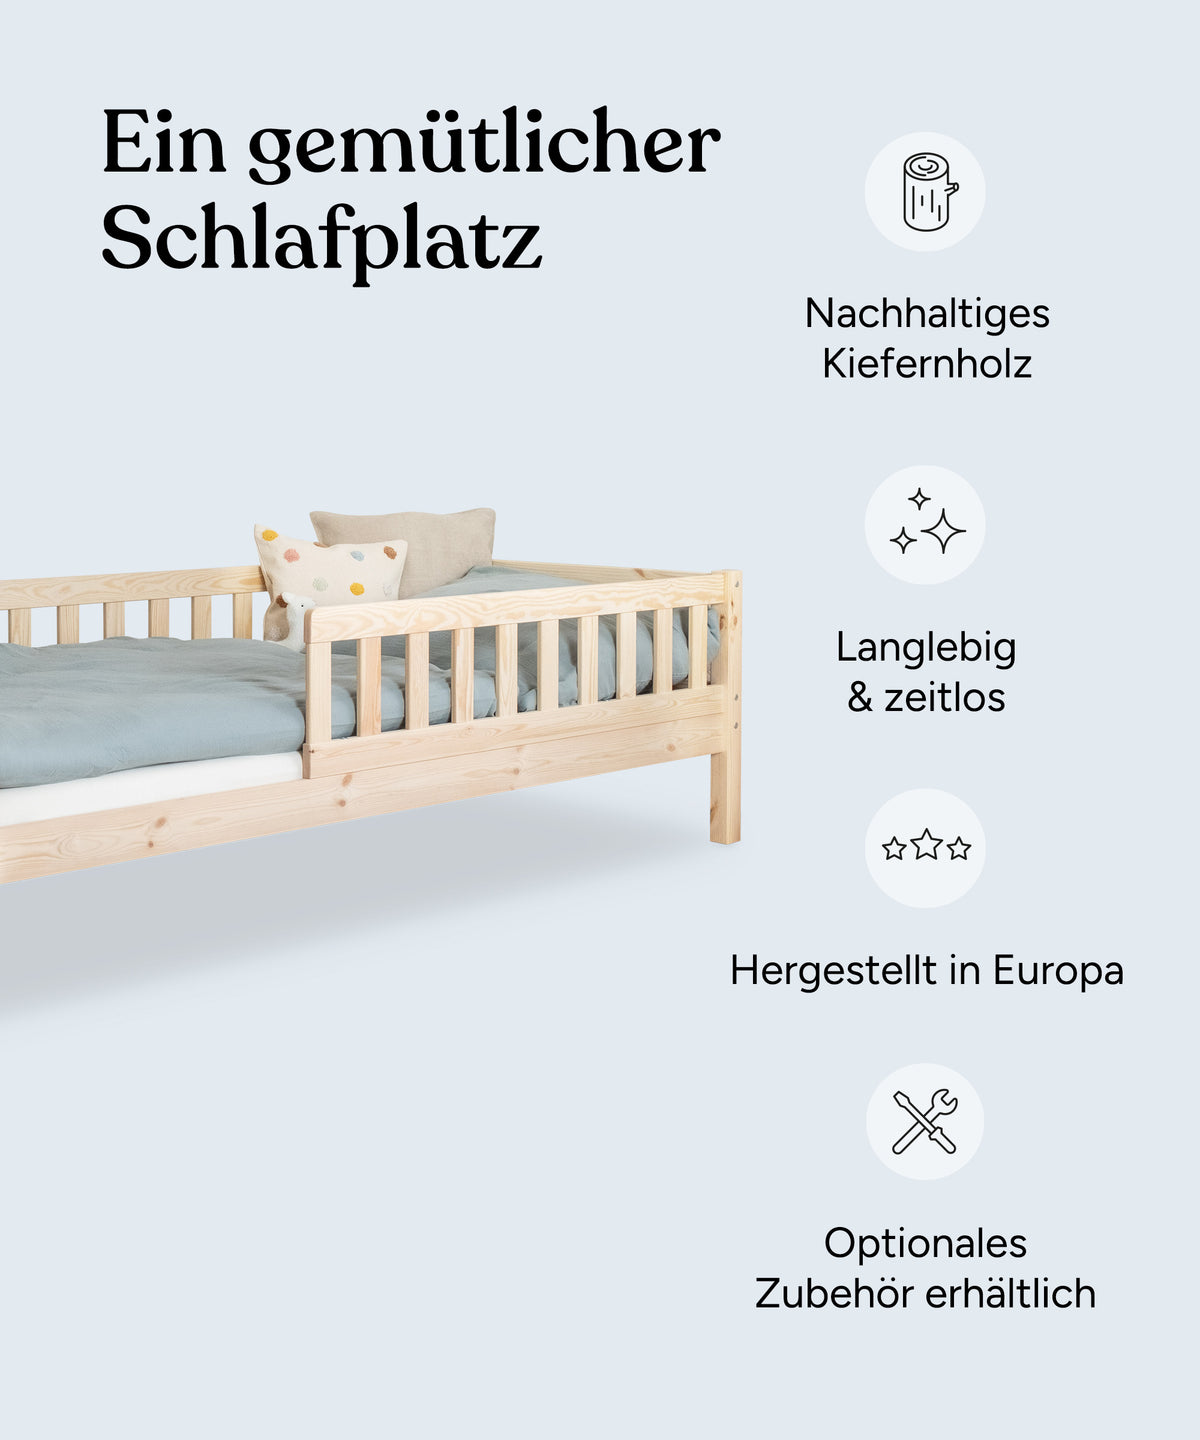 Vorteile Kinderbett Kiefer Natur: Nachhaltiges Kiefernholz, langlebig und zeitlos, hergestellt in Europa, optionales Zubehör erhältlich.